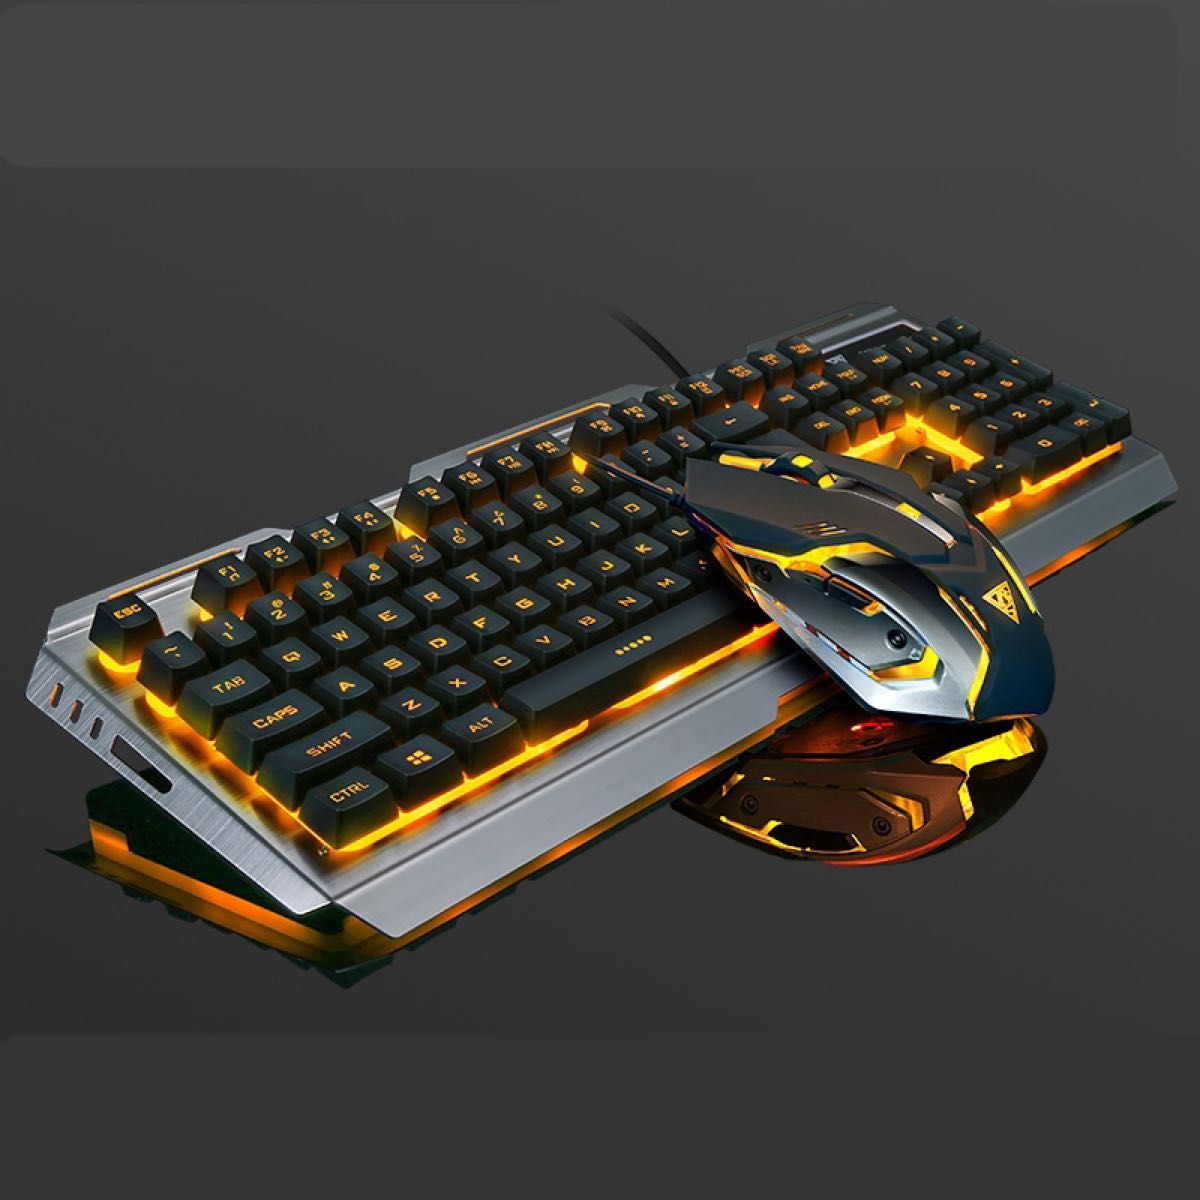 ゲーミング キーボード マウス セット バックライト付き ブラック × オレンジ ゲーミングキーボード